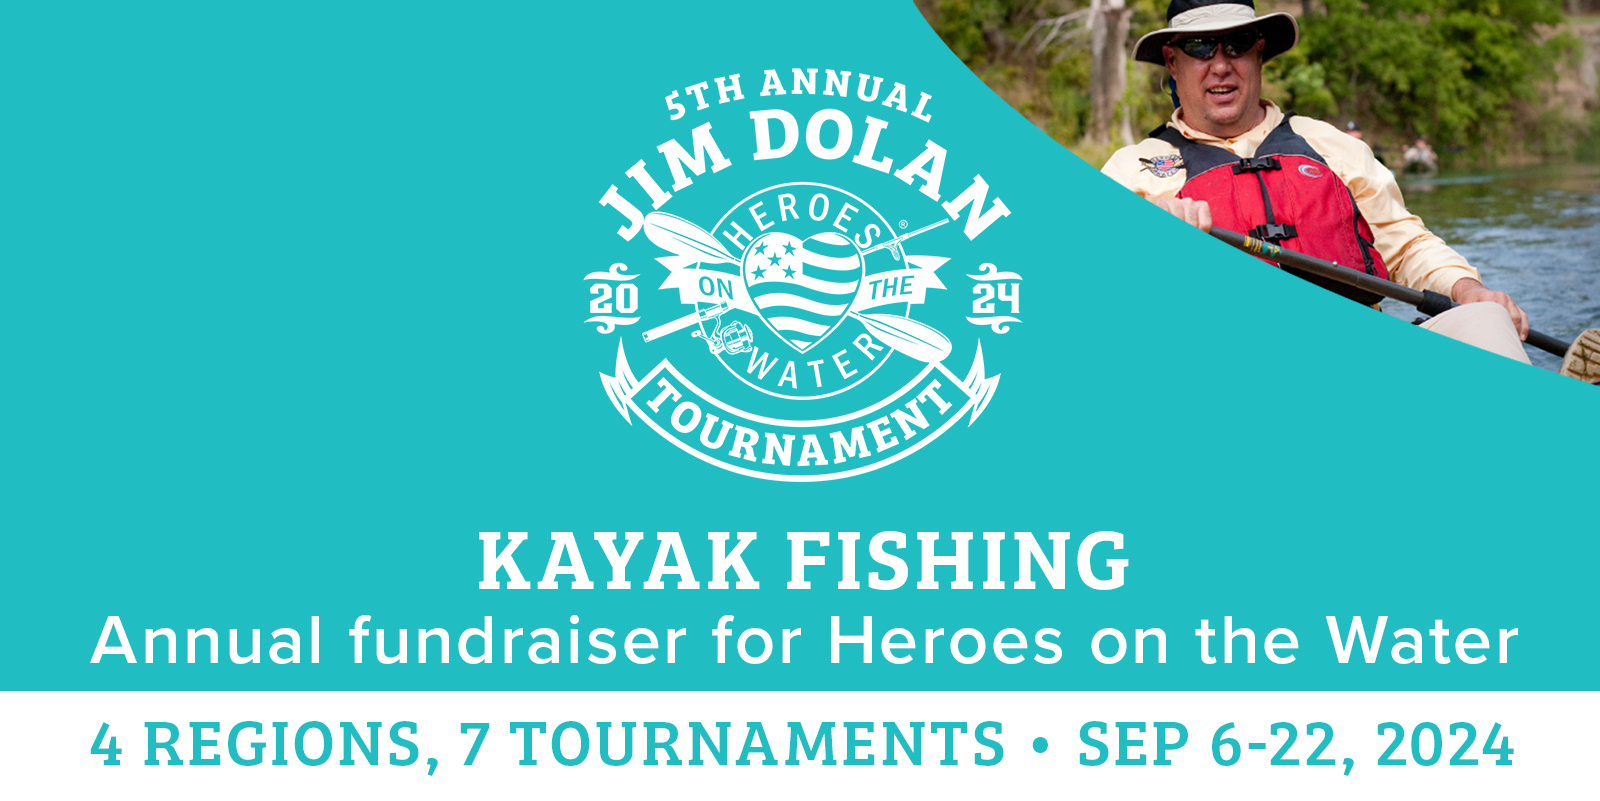 Annual Jim Dolan Kayak Fishing Tournament